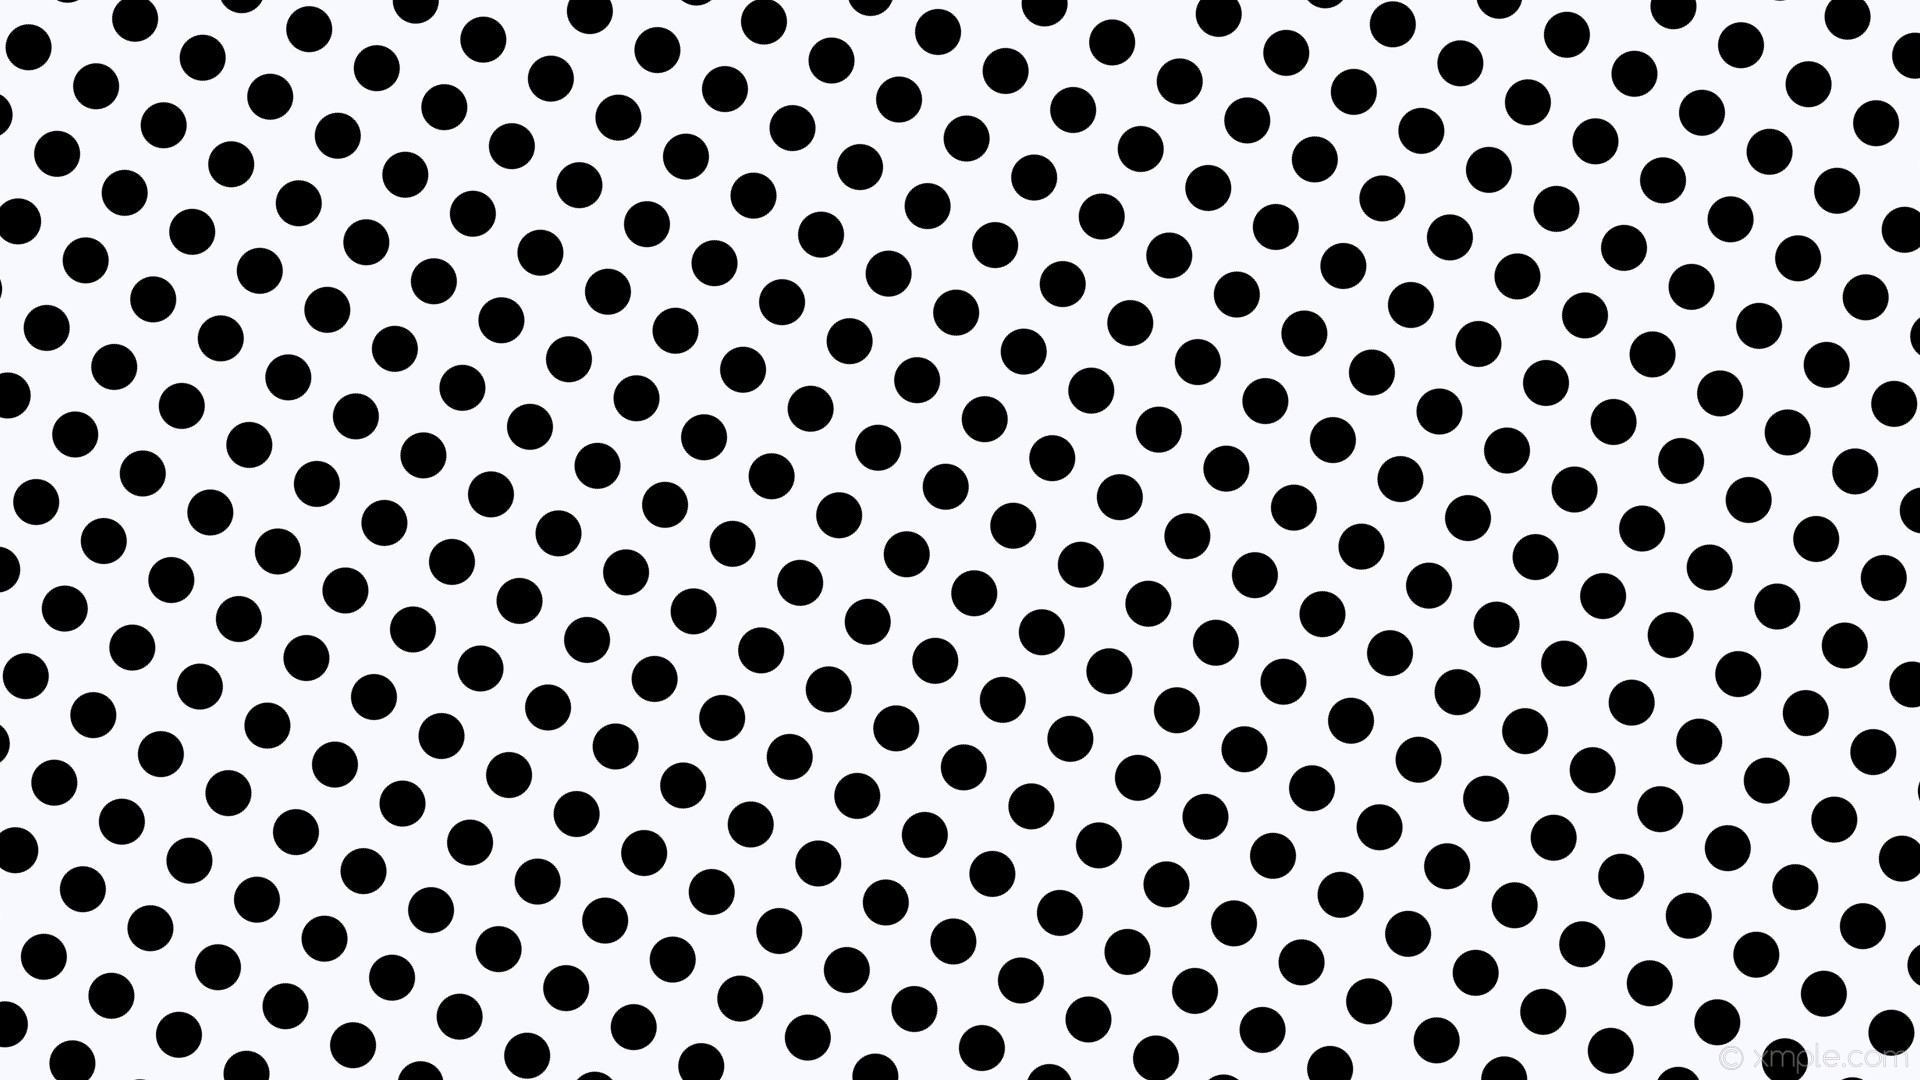 1920x1080 wallpaper white polka dots spots black ghost white #f8f8ff #000000 150Â°  46px 78px